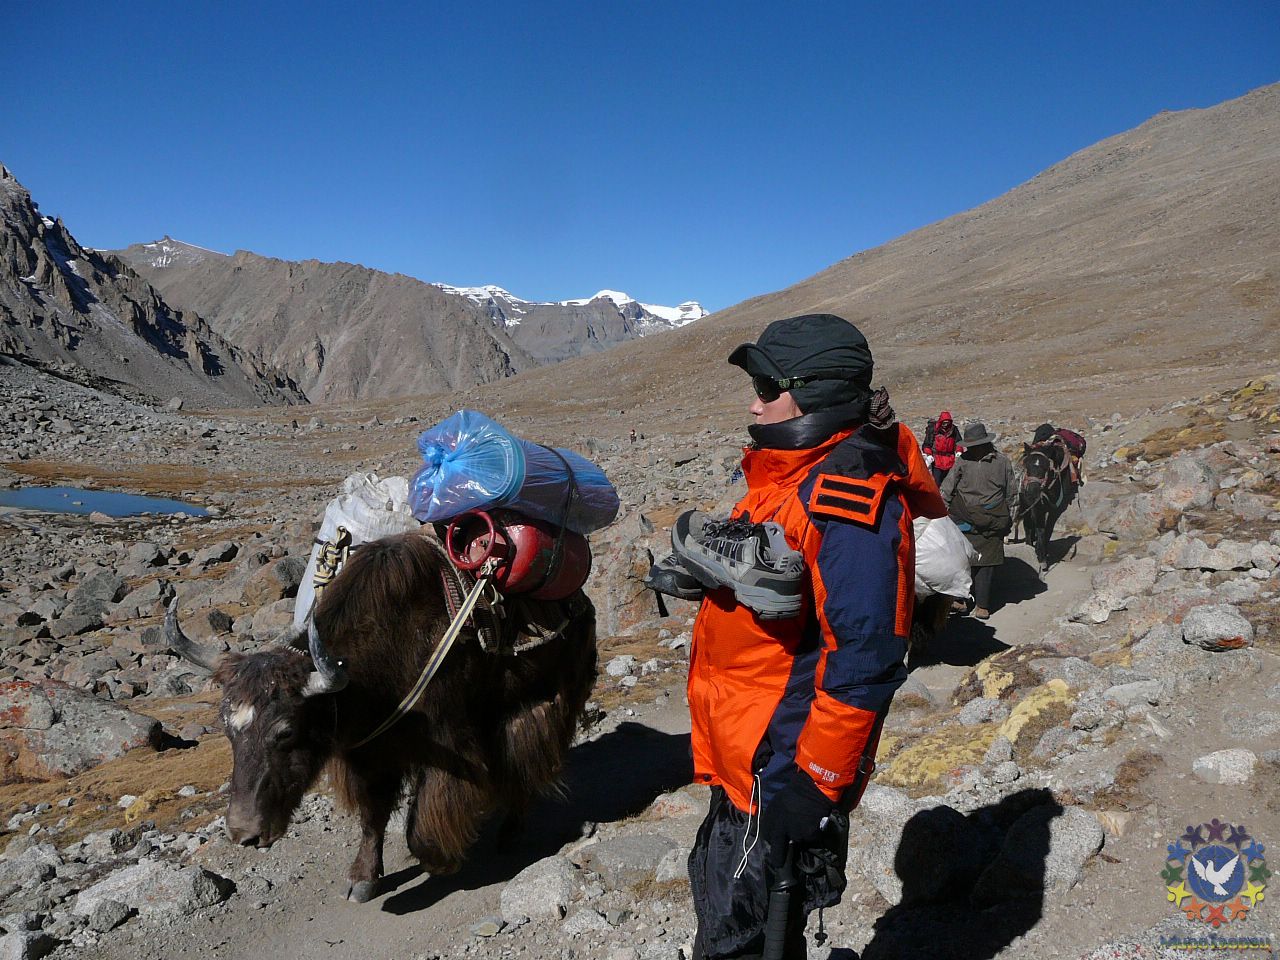 Второй день Коры. Кроссовки на шее для того, чтобы оставить их на перевале. Так принято- оставить на нем что-то из старой одежды, надеть что-то новое, символично при этом возрадиться к новой жизни - Тибет 2006. Фотовоспоминание 5 лет спустя.